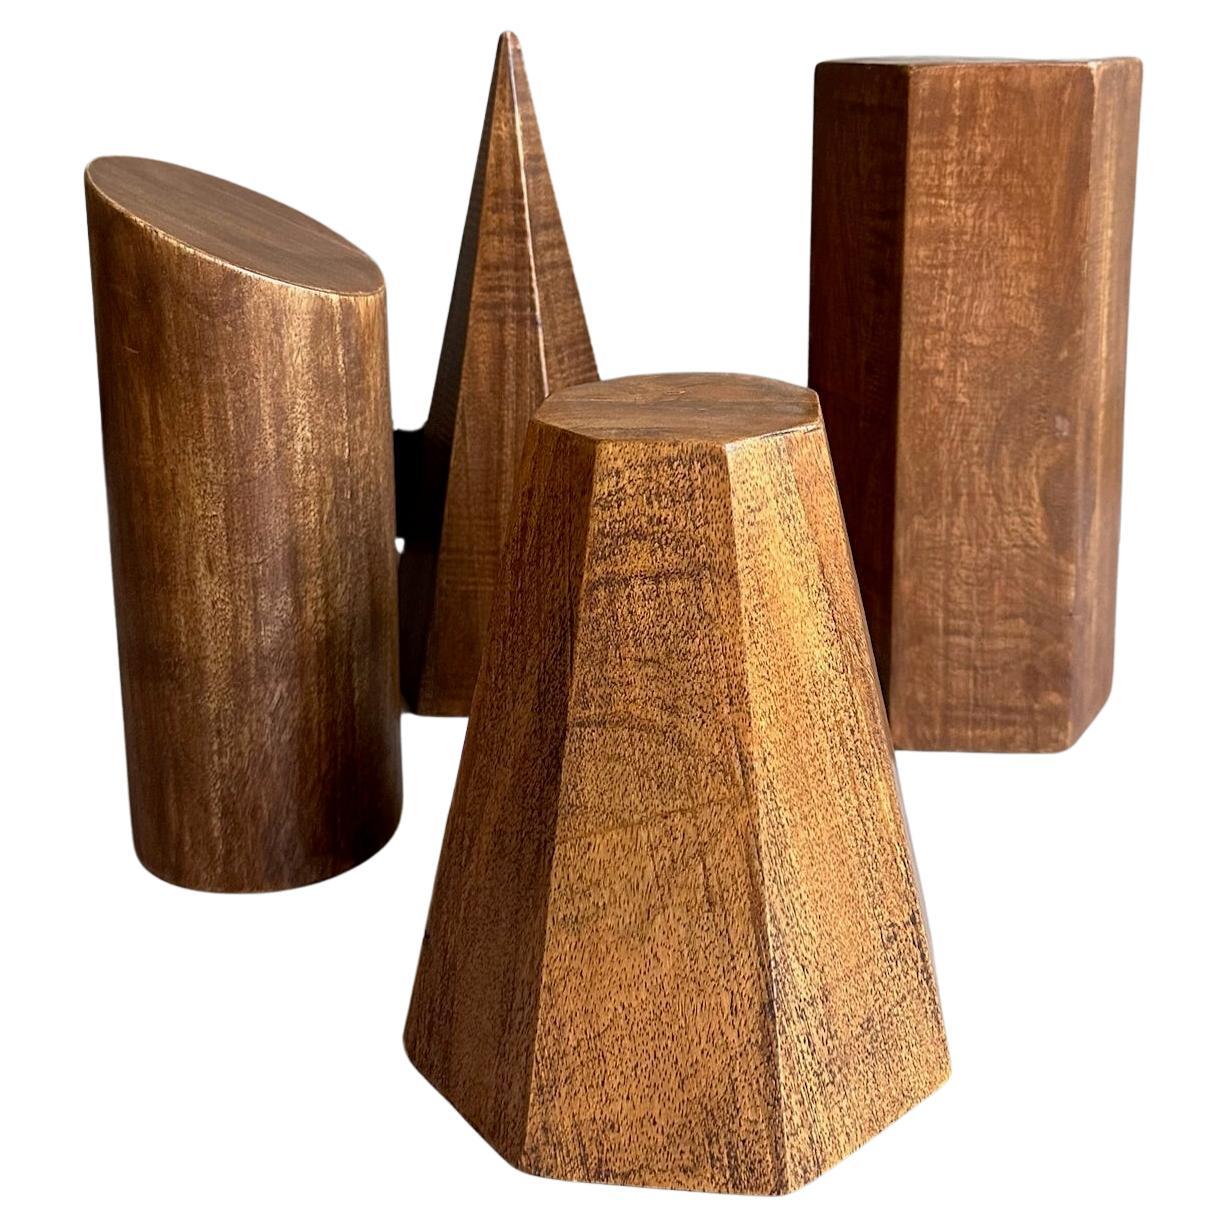 Ensemble de formes géométriques vintage en bois